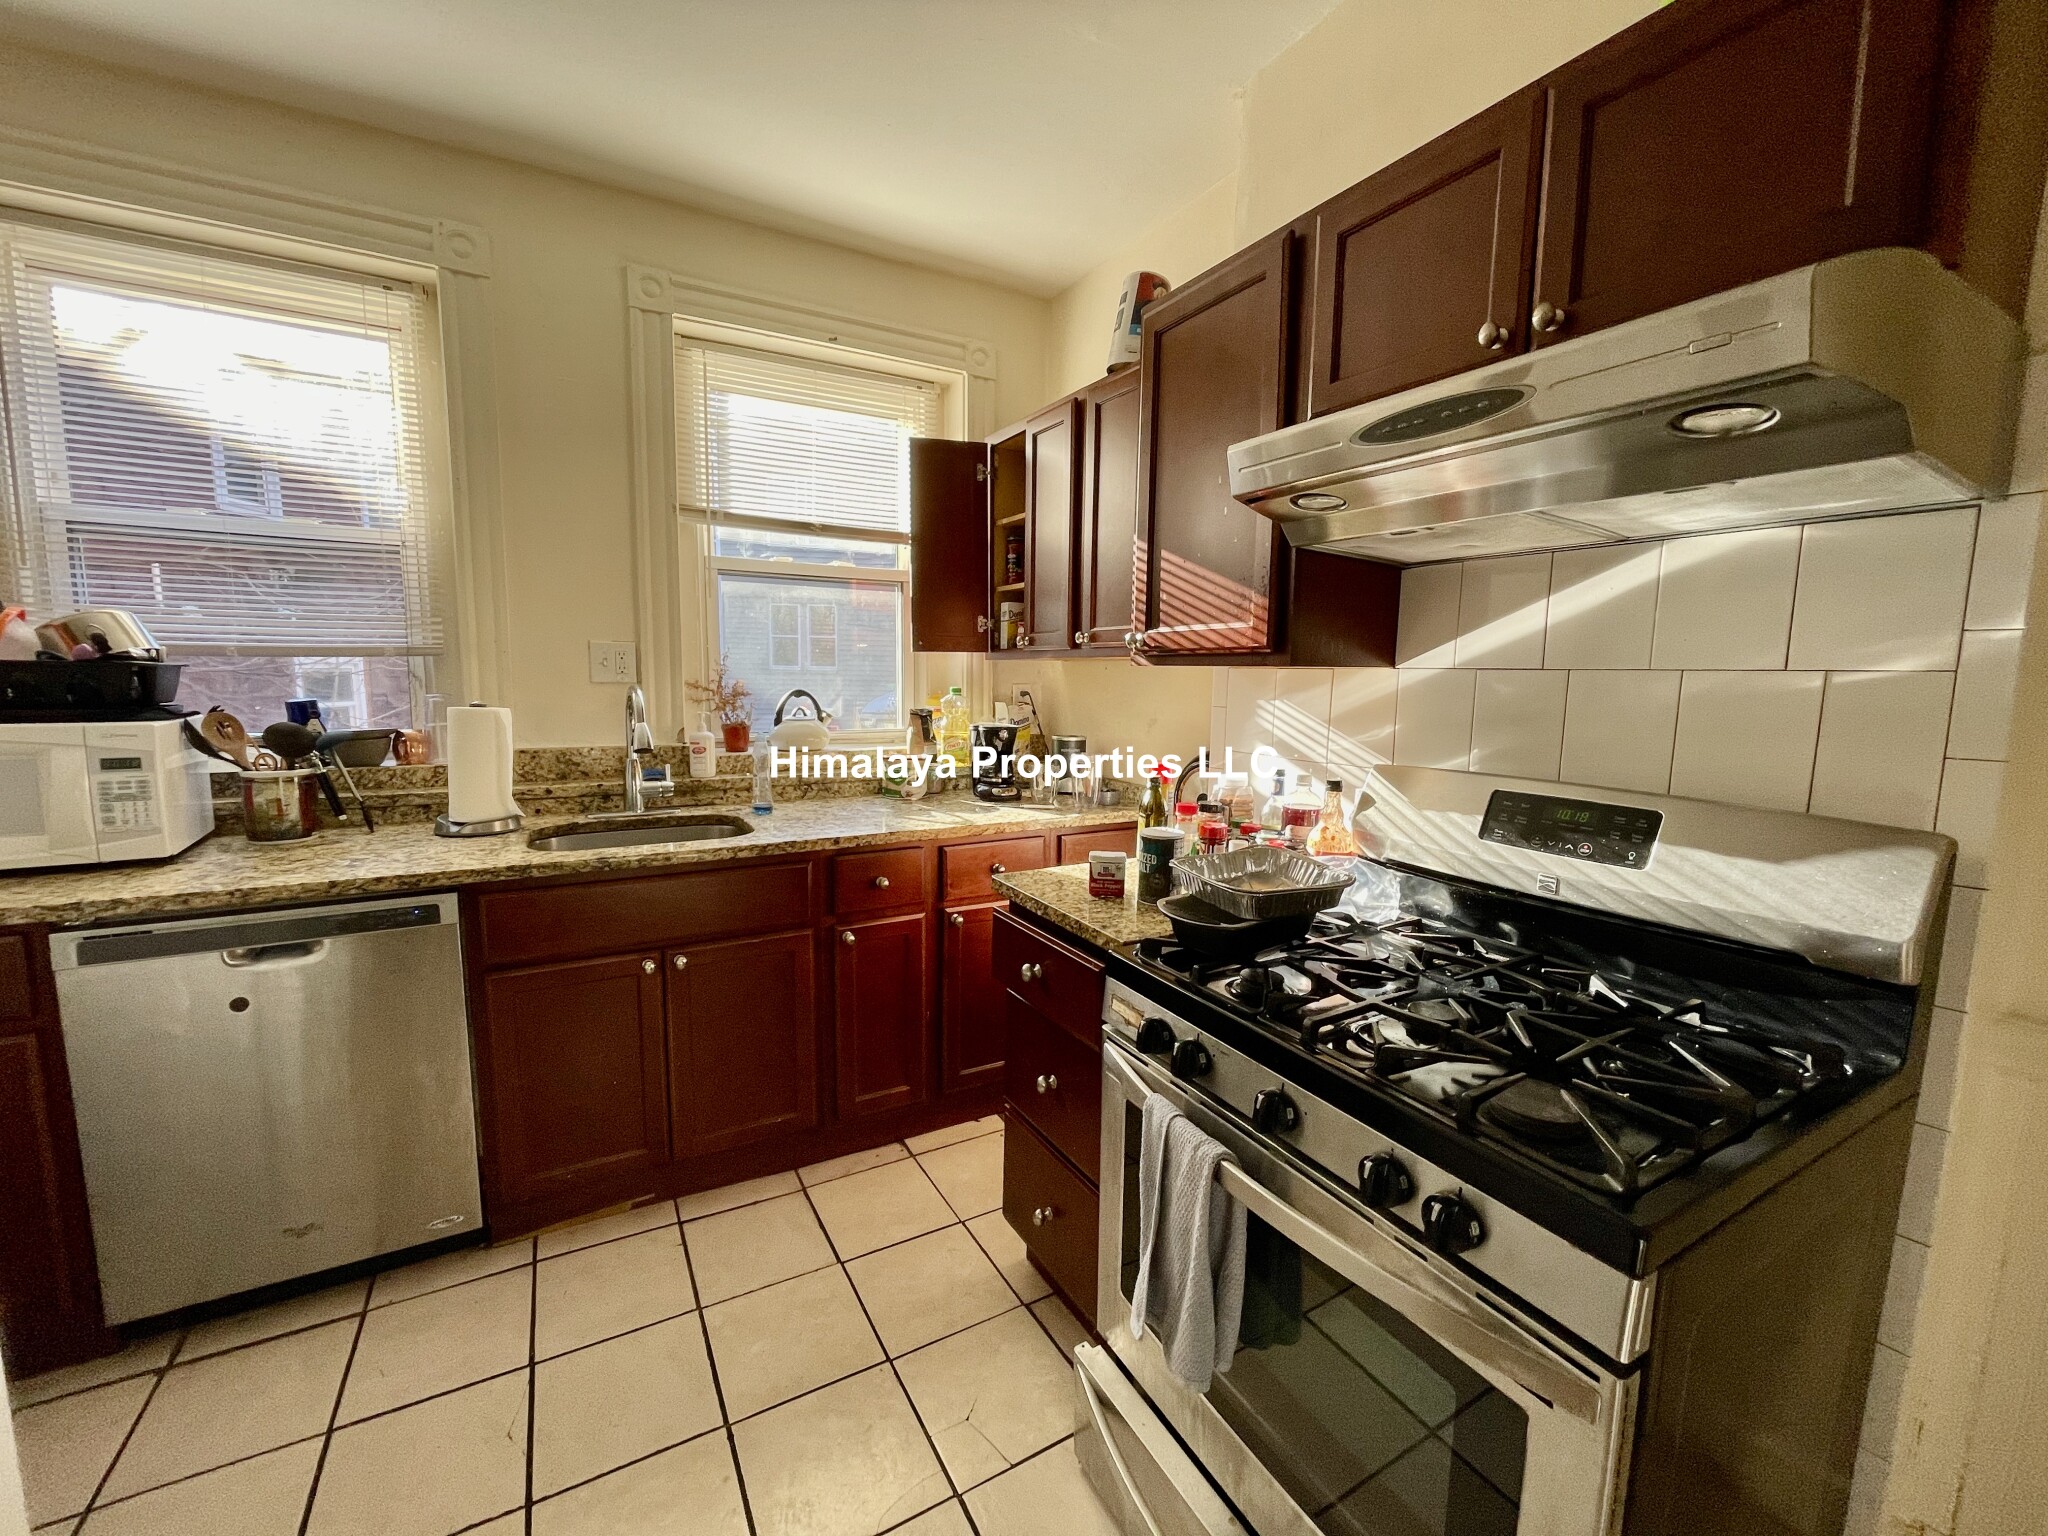 Photos of apartment on Bragdon,Boston MA 02119